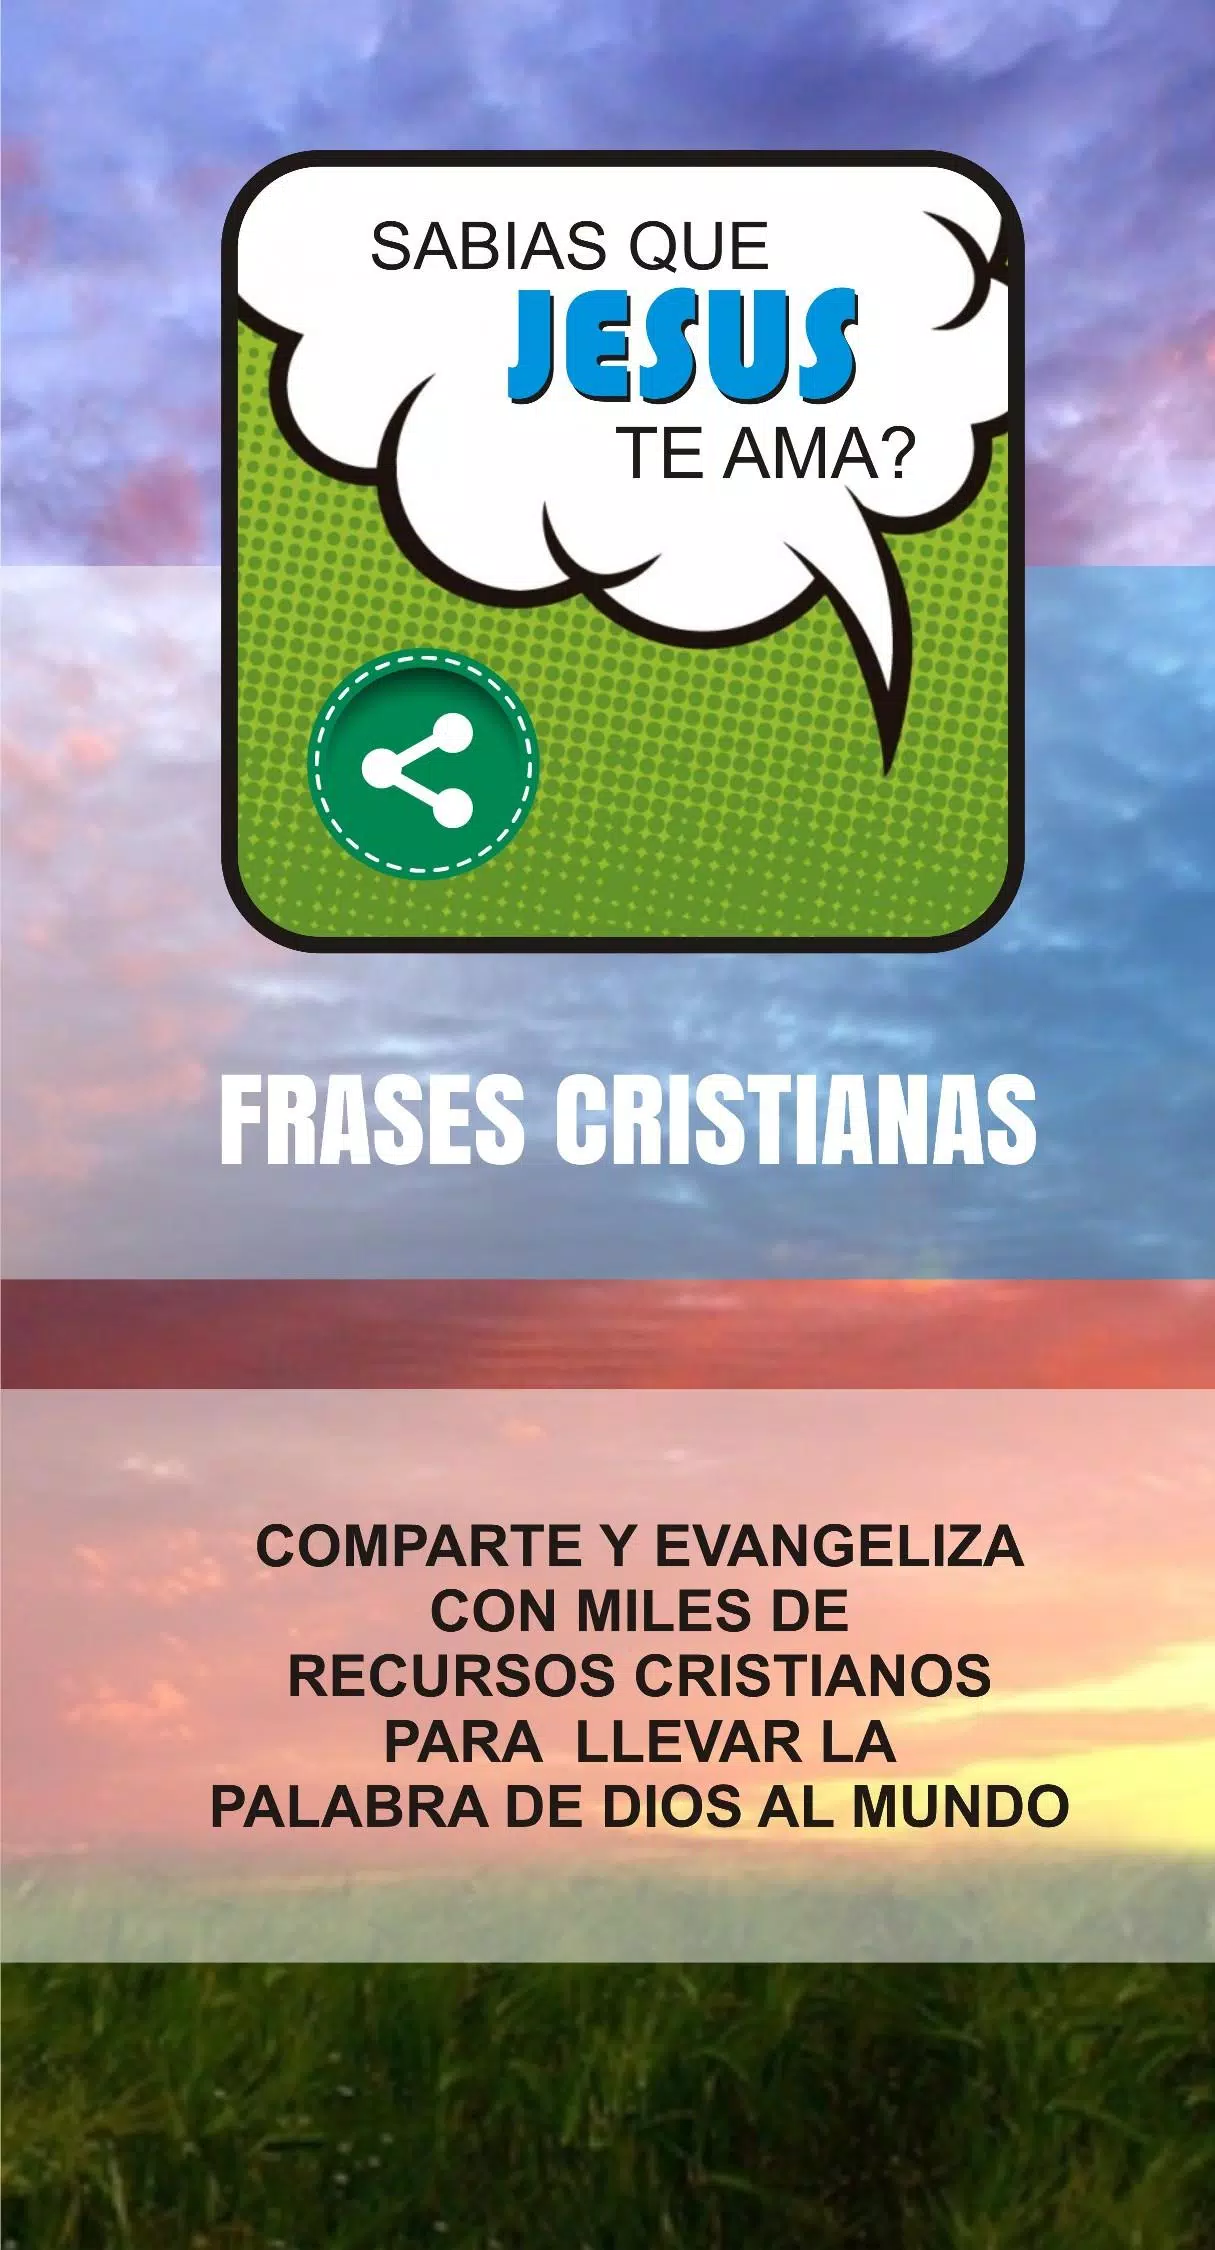 Download do APK de Frases Cristãs do Coquinho para Android